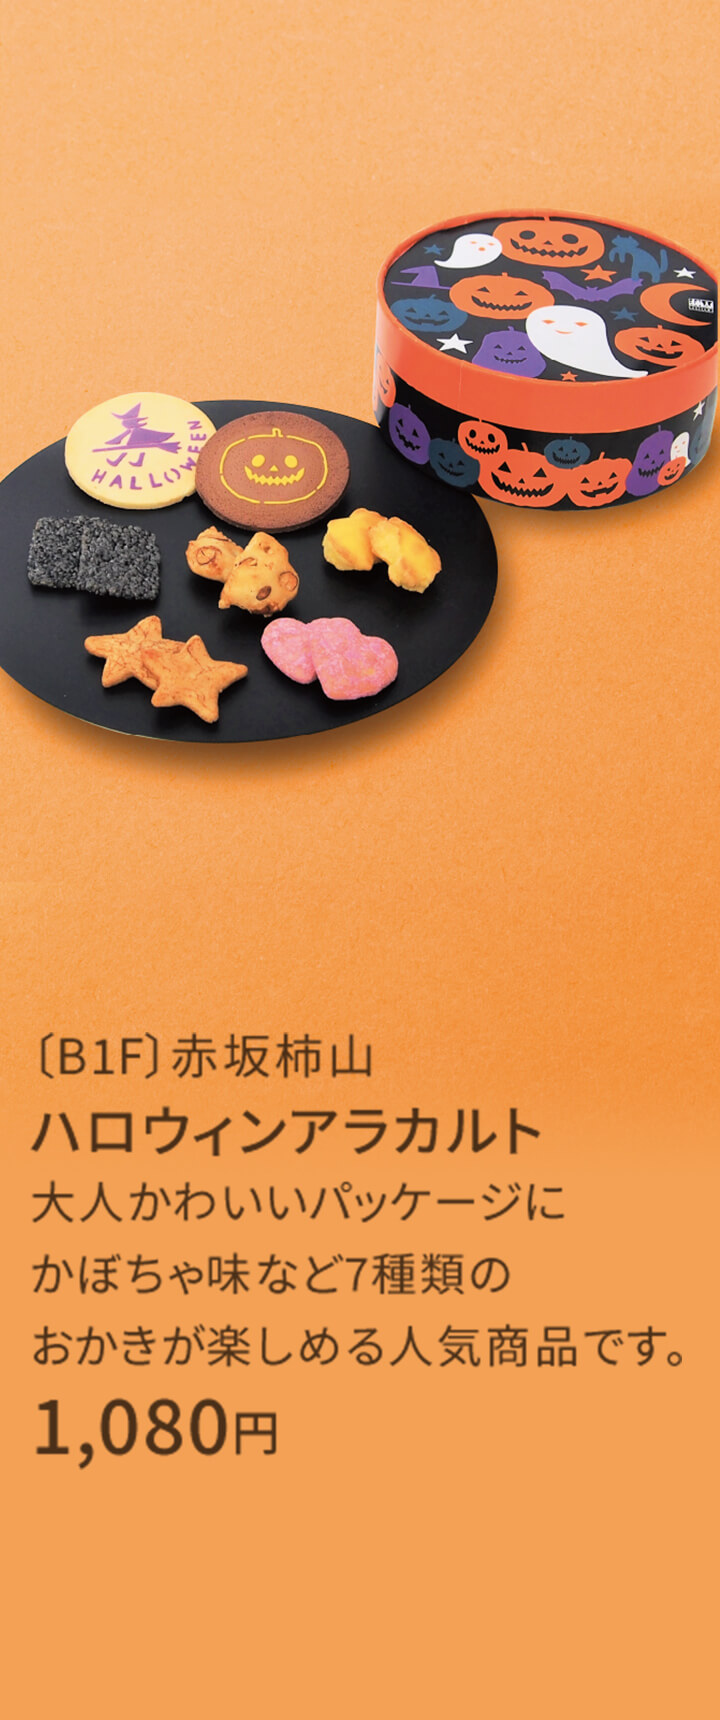 〔B1F〕赤坂柿山 ハロウィンアラカルト 大人かわいいパッケージにかぼちゃ味など7種類のおかきが楽しめる人気商品です。 1,080円